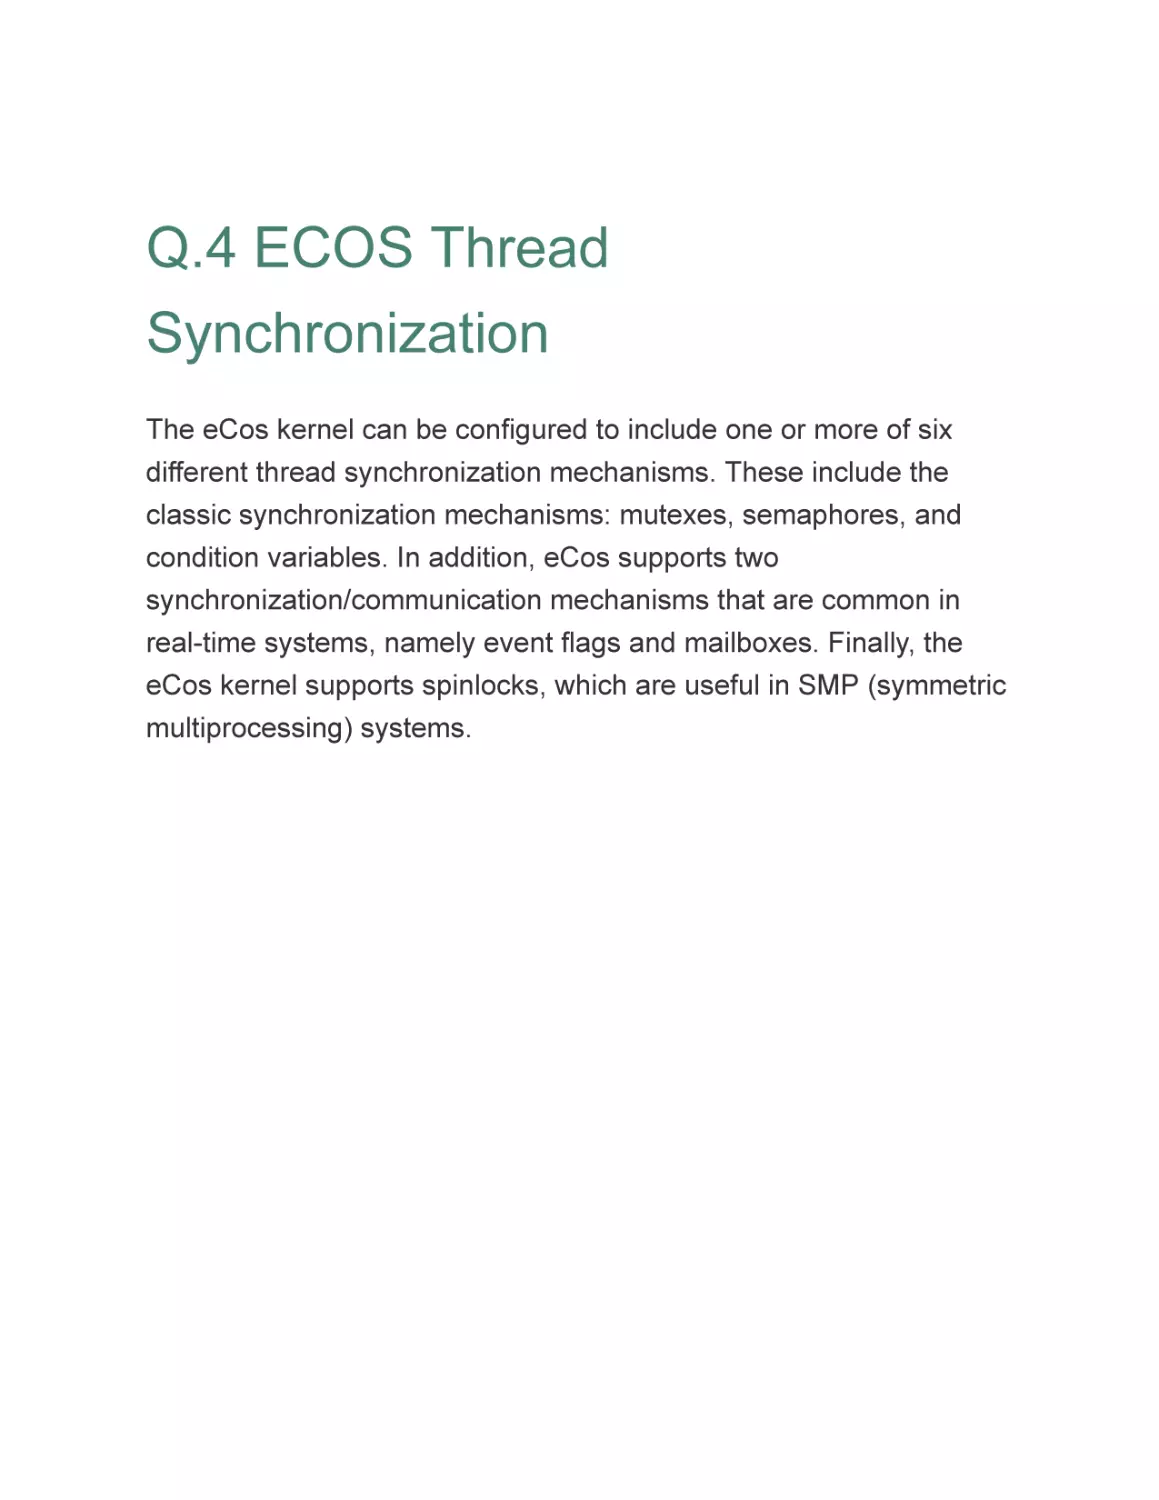 Q.4 ECOS Thread Synchronization